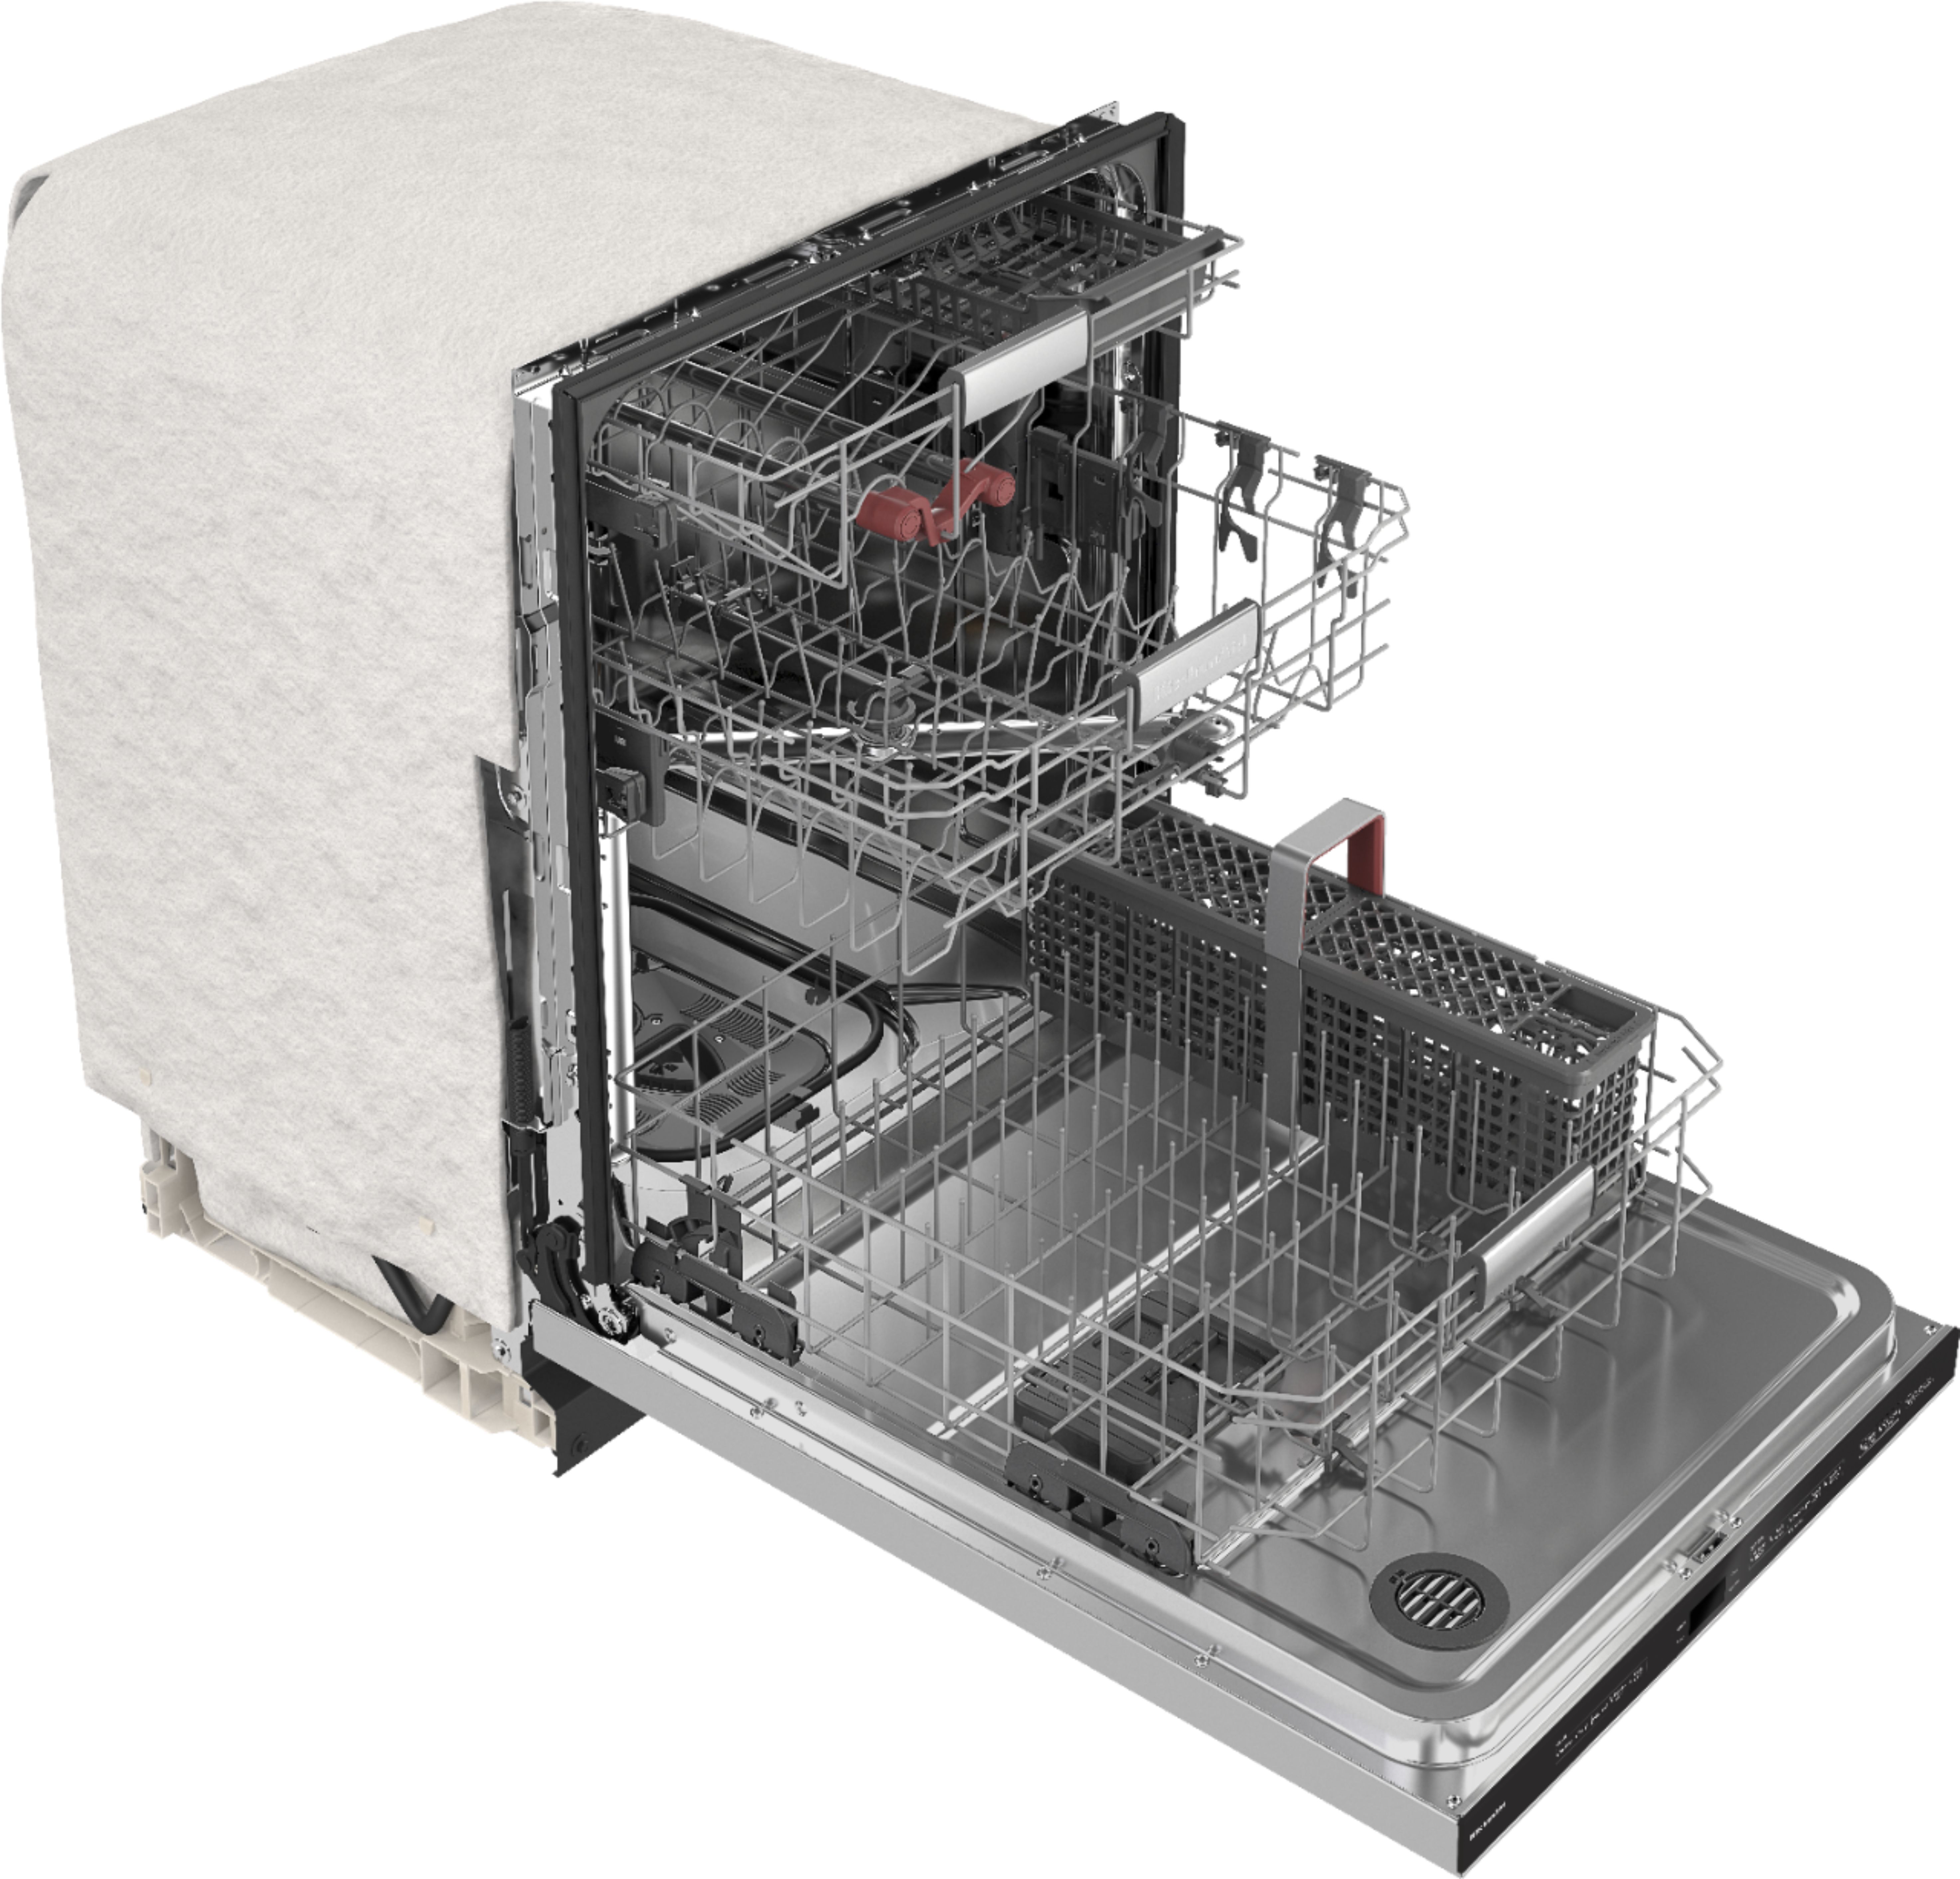 KitchenAid 44 DBA Dishwasher in PrintShield Finish with Freeflex Third Rack Stainless Steel